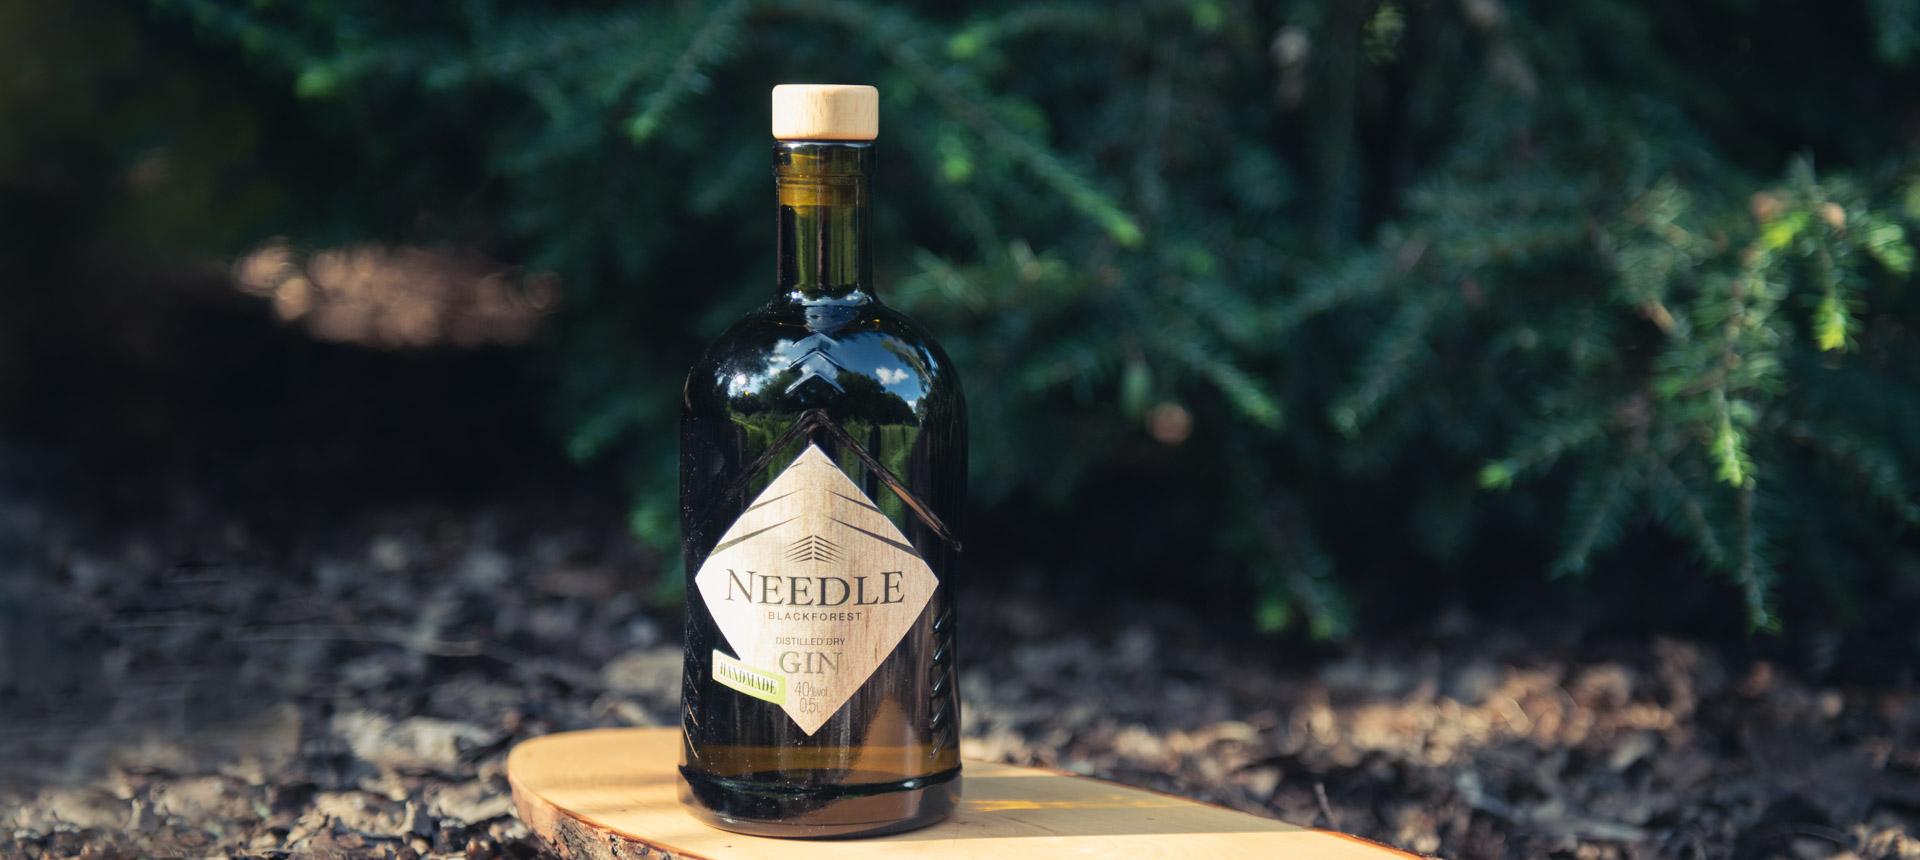 Der Needle Gin von Bimmerle Private Distillery - Unverwechselbarer Wacholdergeschmack mit einem Hauch von Würze und Pfirsich.